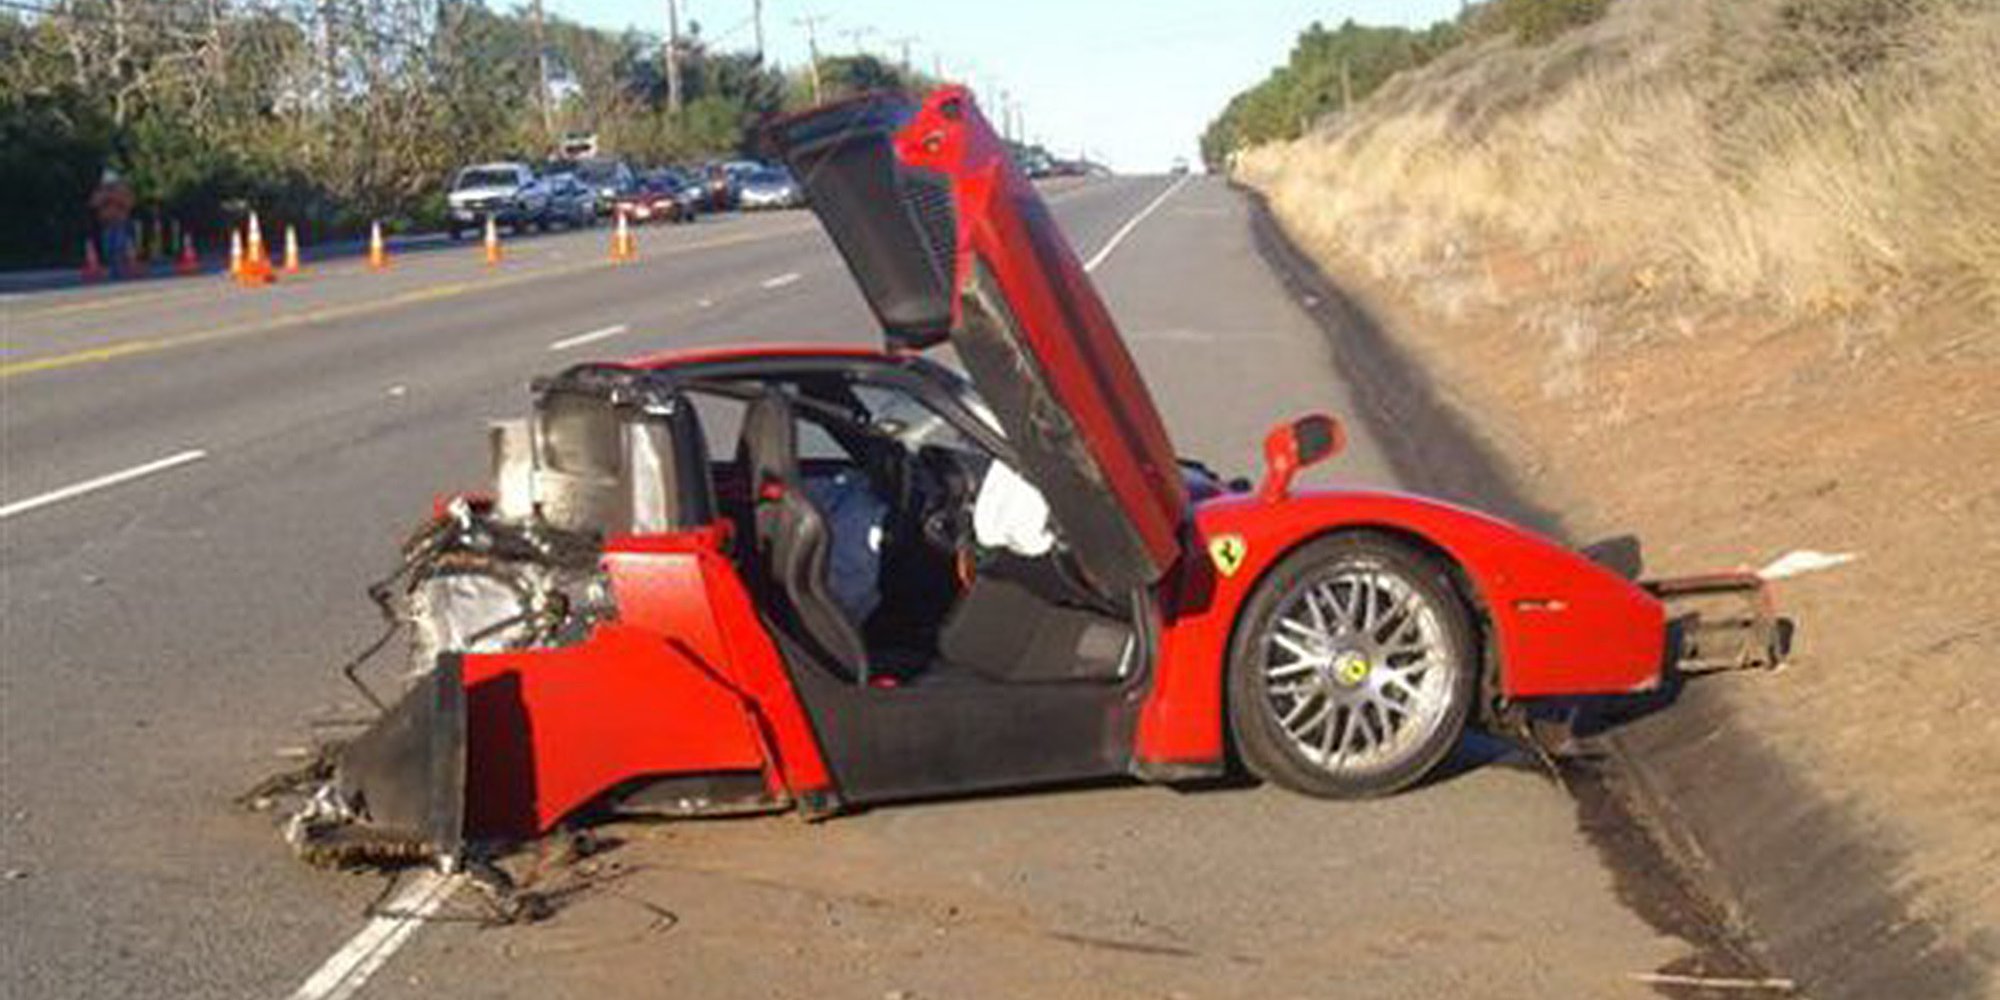 Mechanic Wrecks Ferrari Enzo